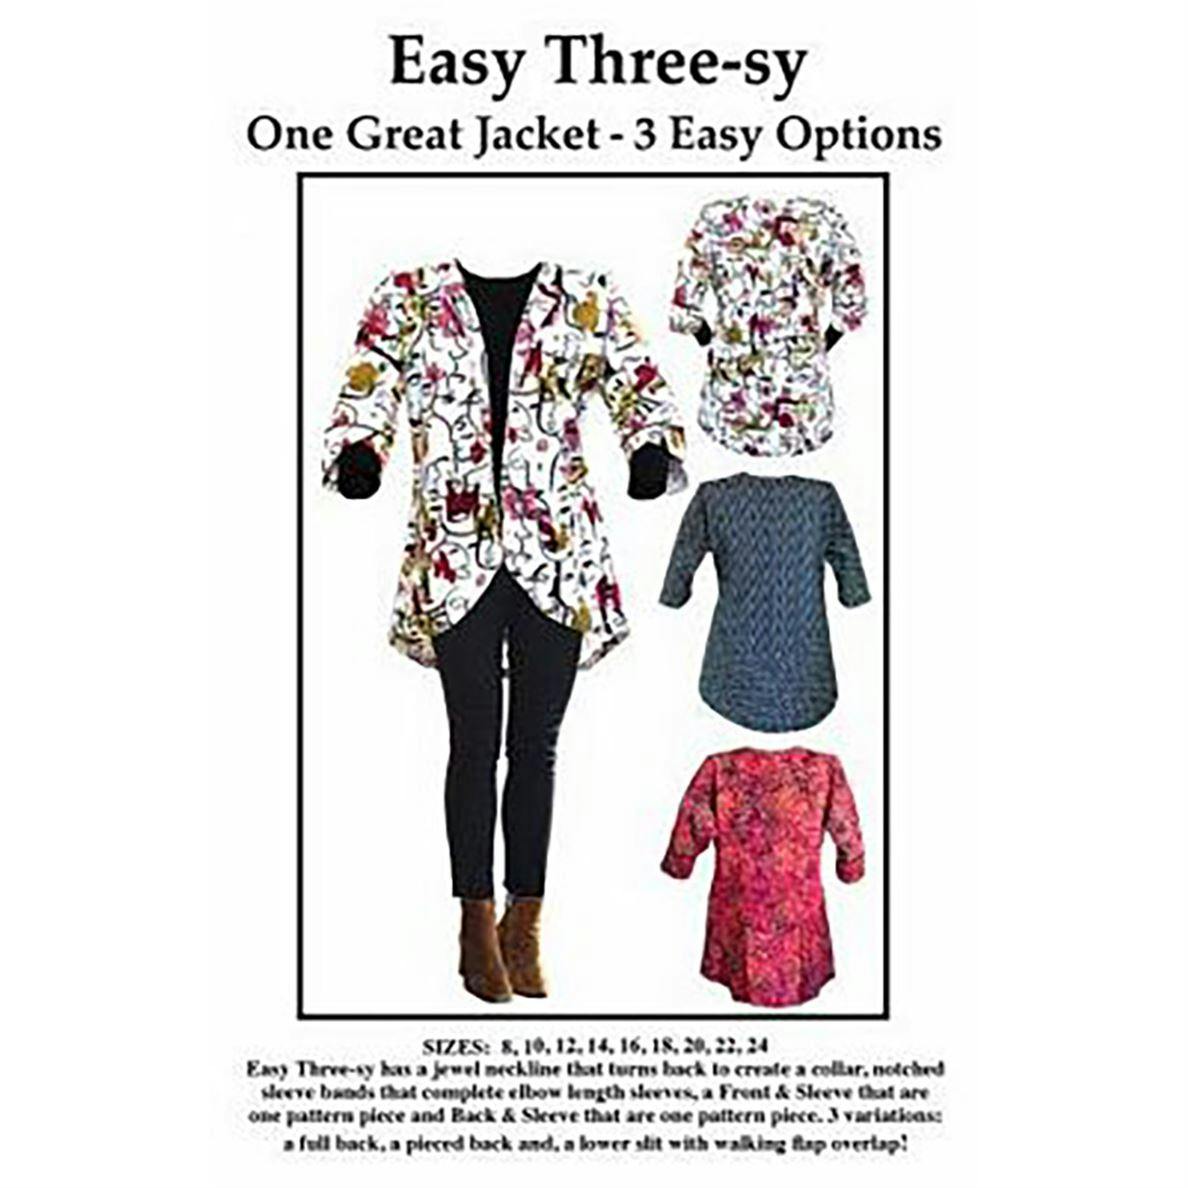 Easy Three-sy Jacket